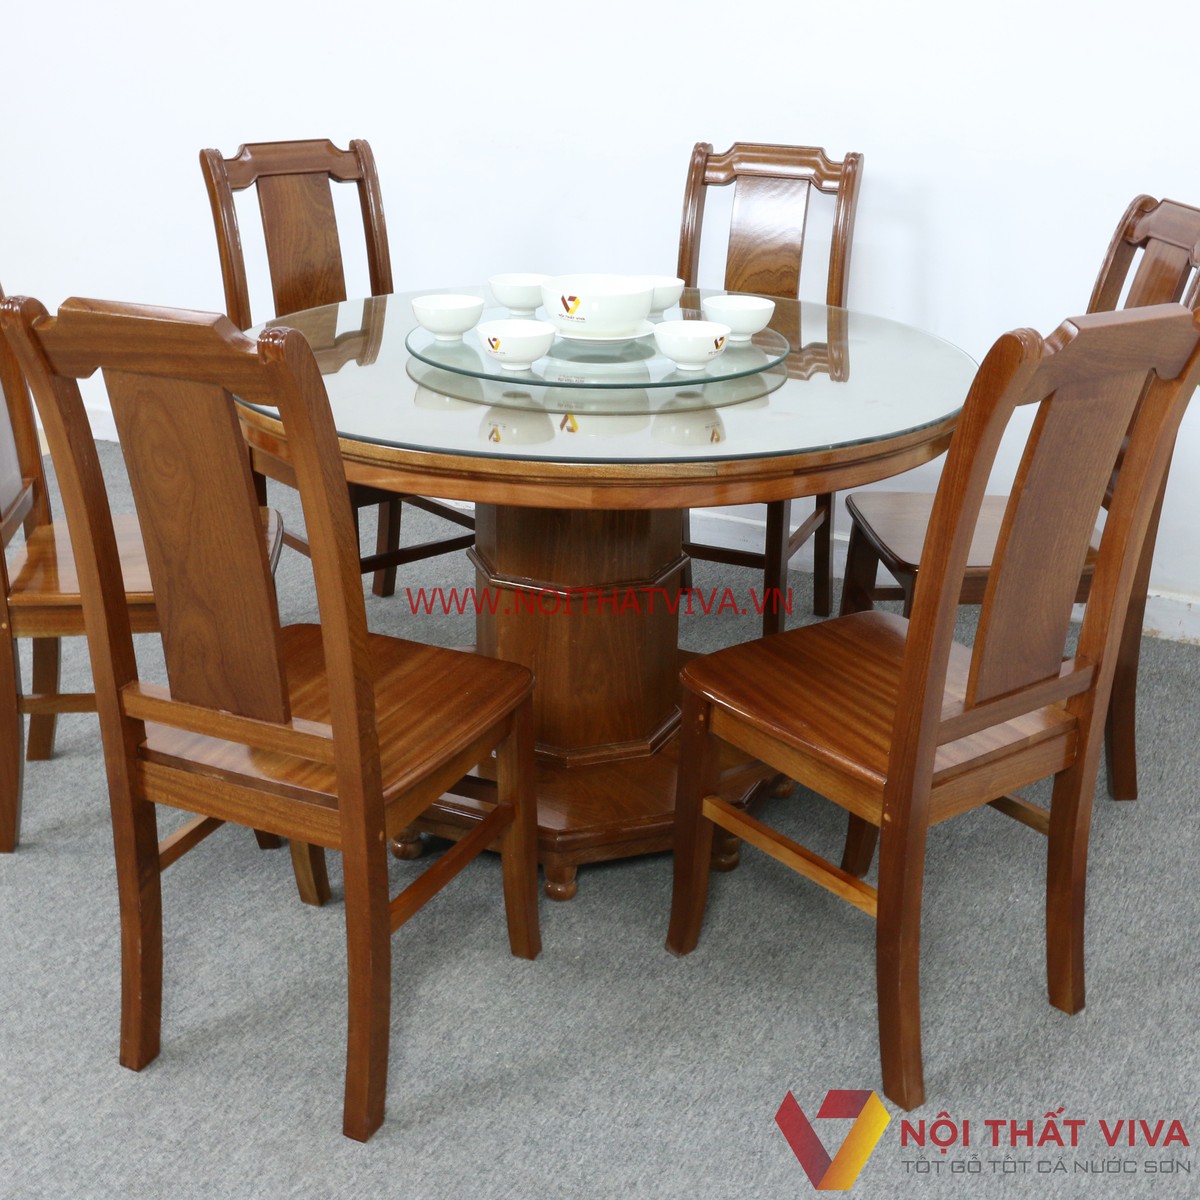 Bộ bàn ăn 6 ghế tròn - Tất tần tật thông tin về kiểu dáng, chất liệu, giá bán